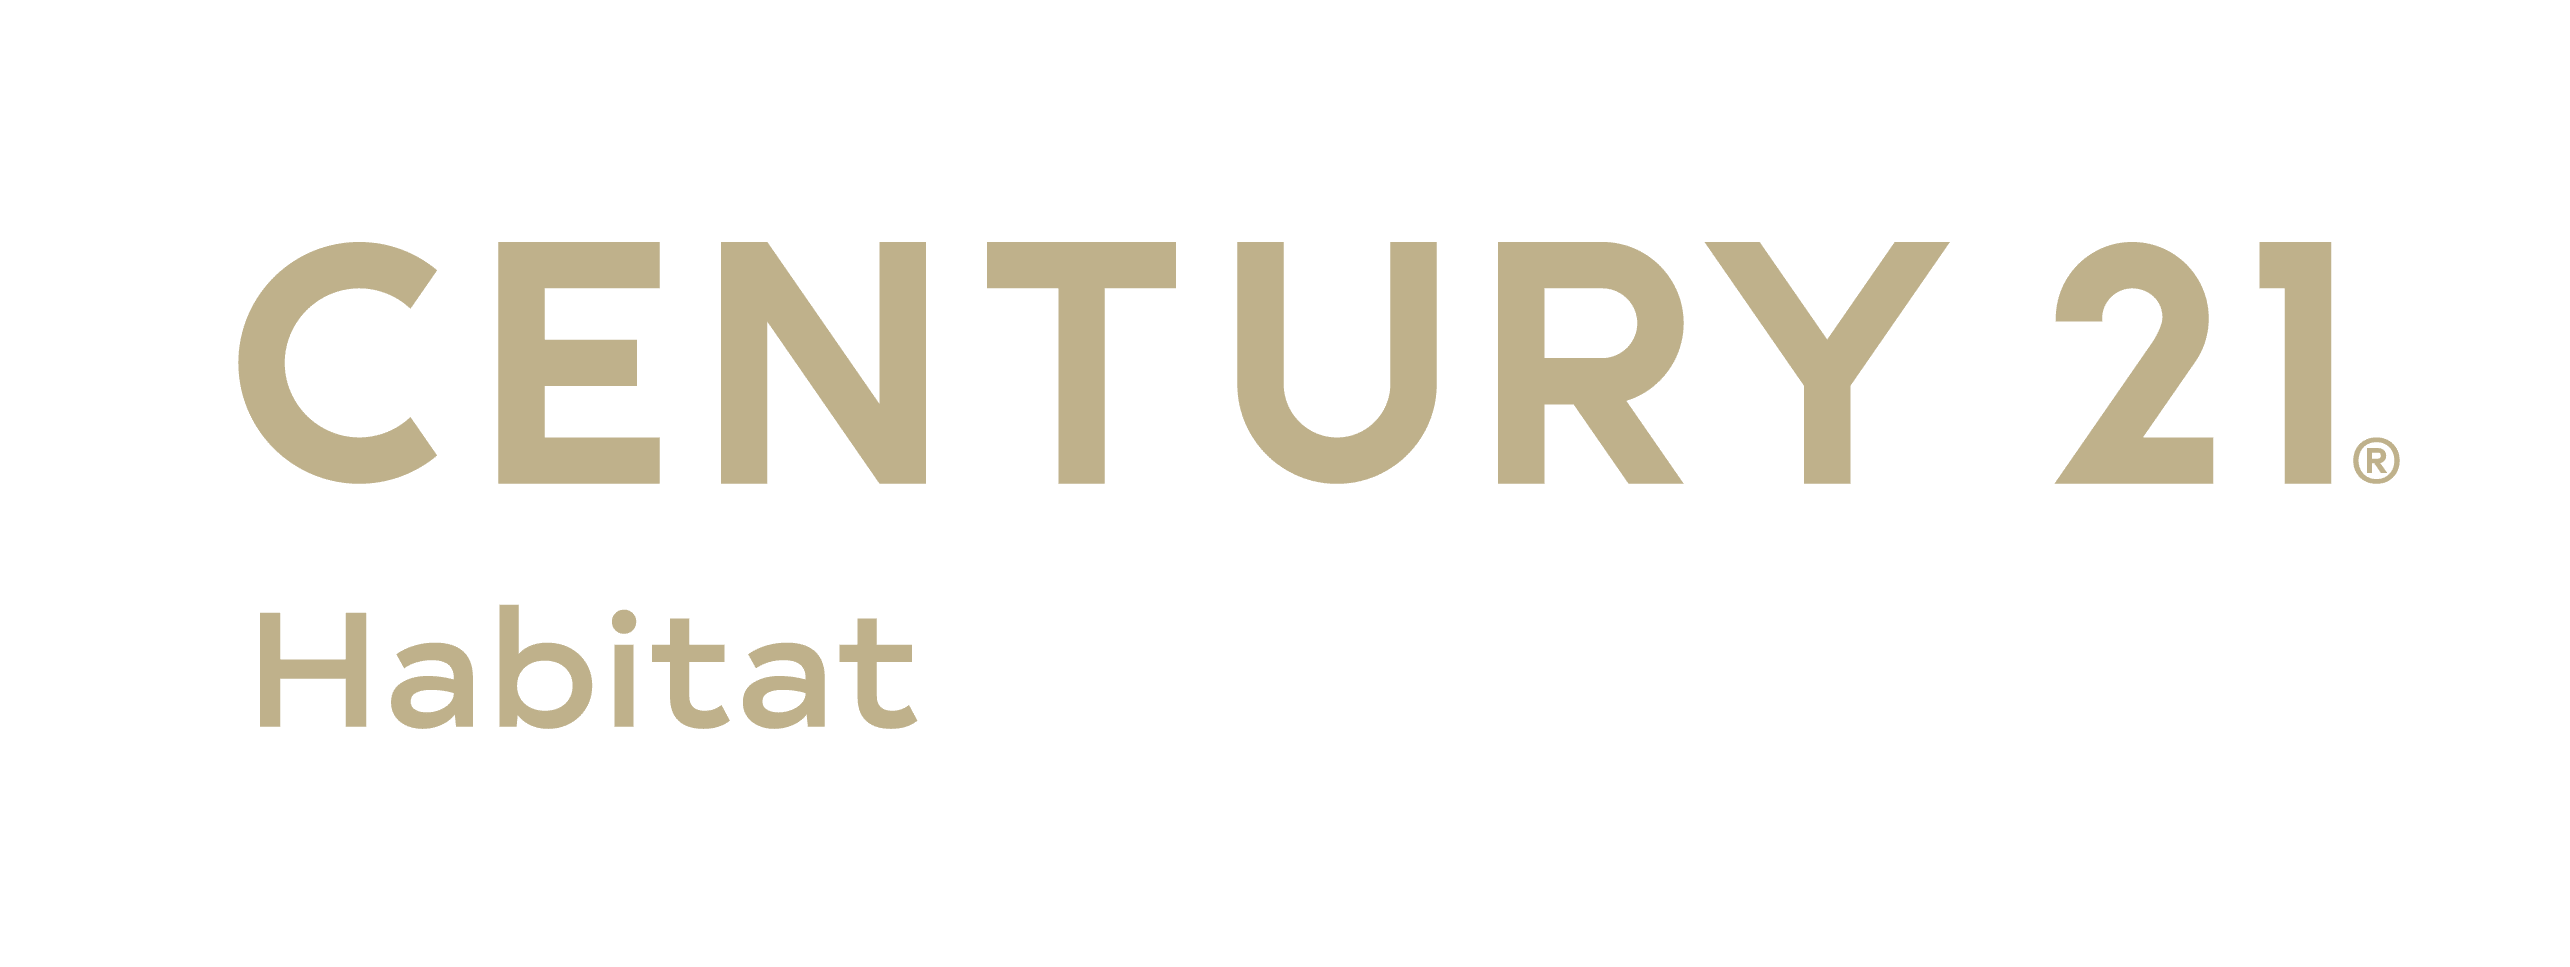 Century21habitat